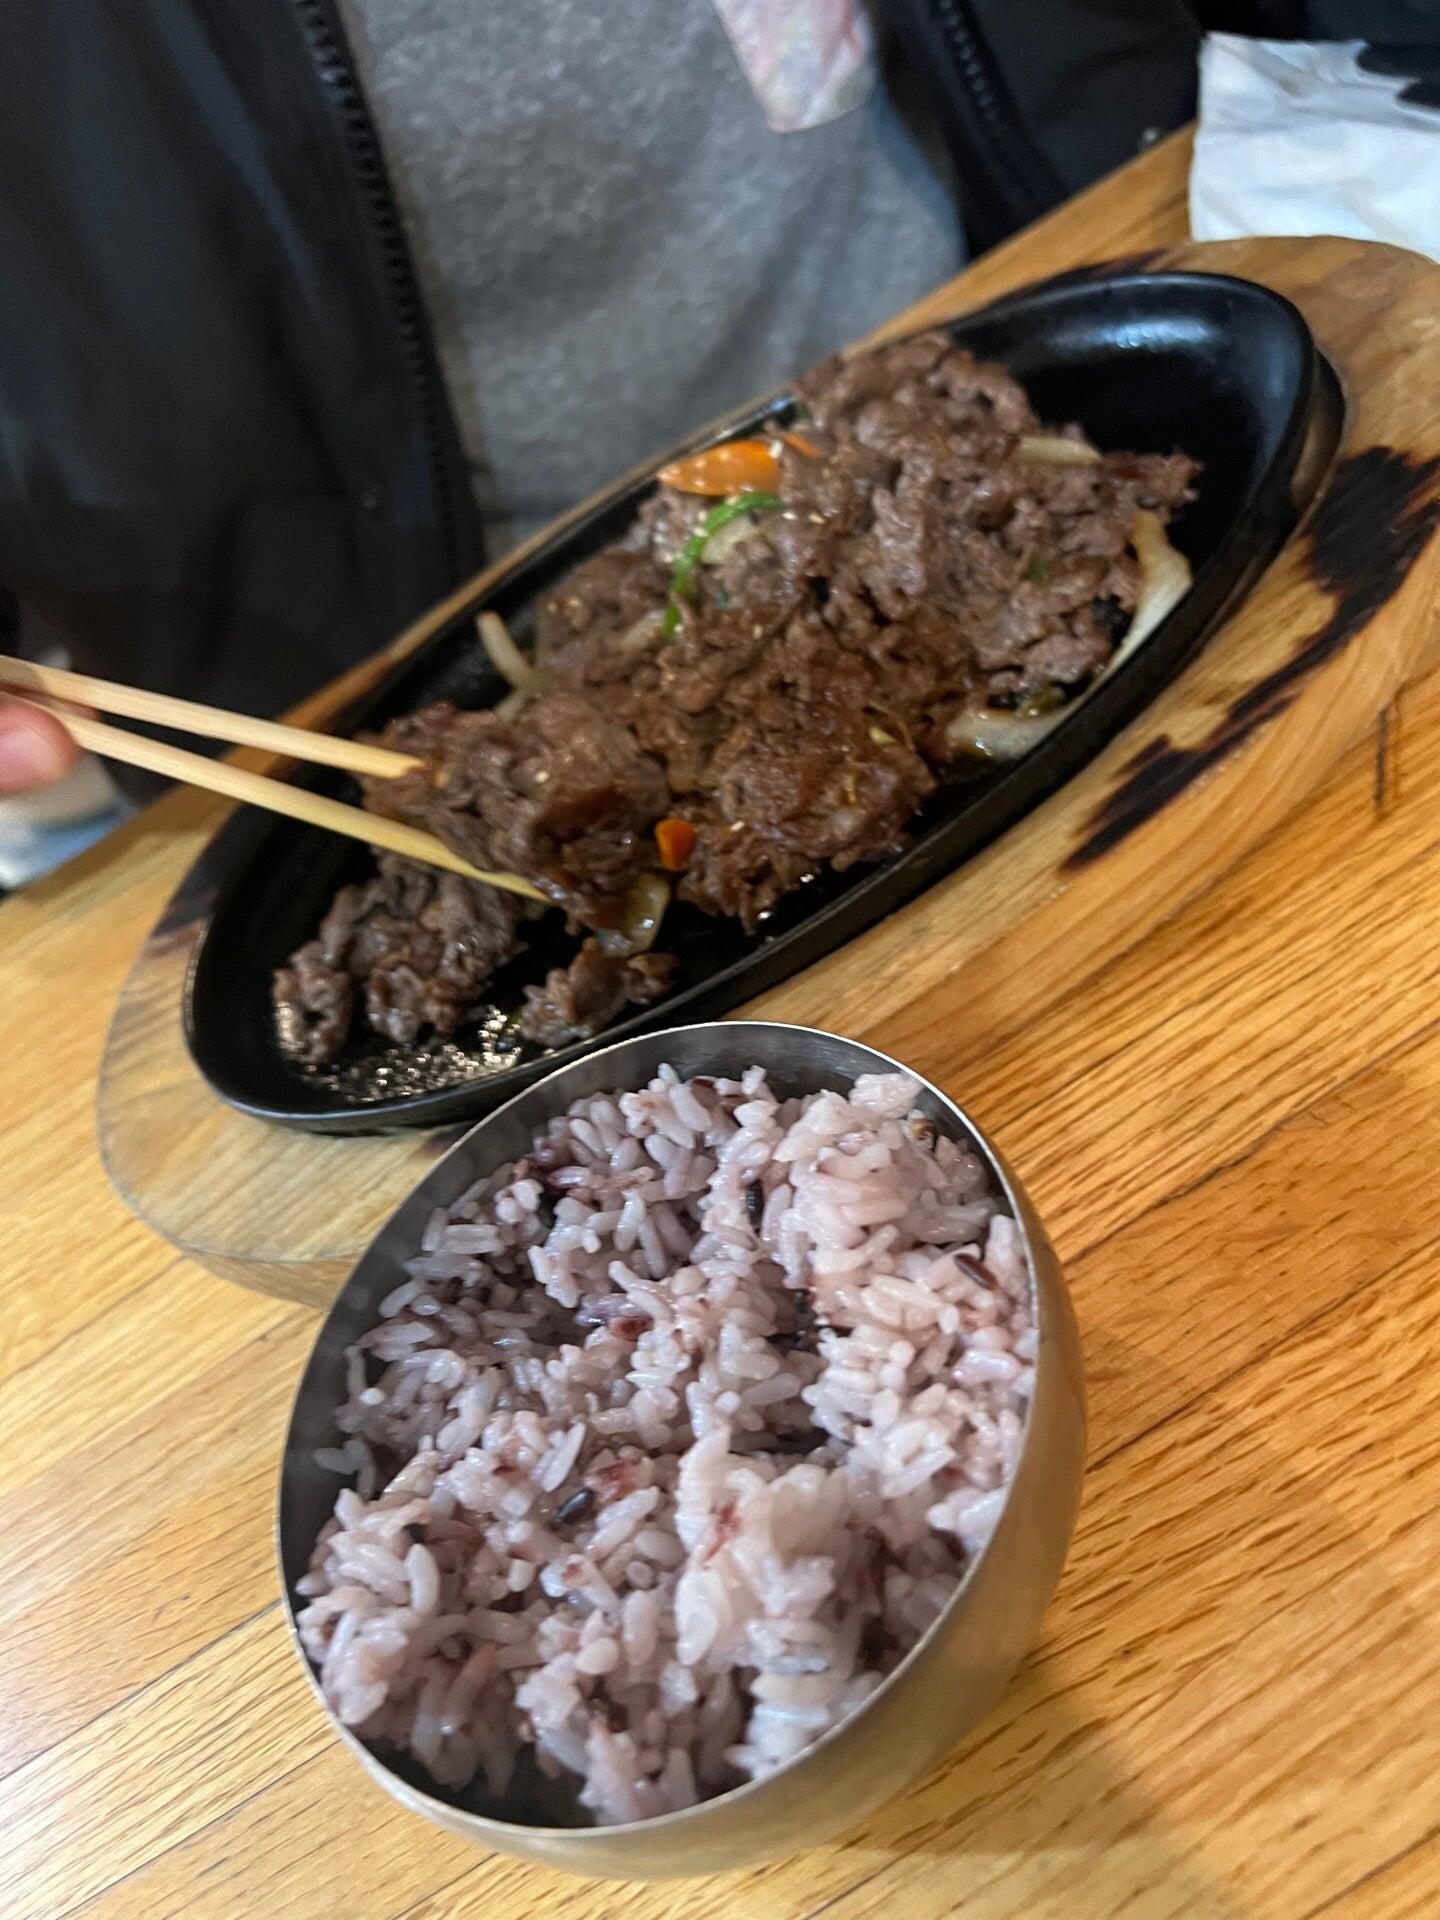 Maru Korean Cuisine & Sushi